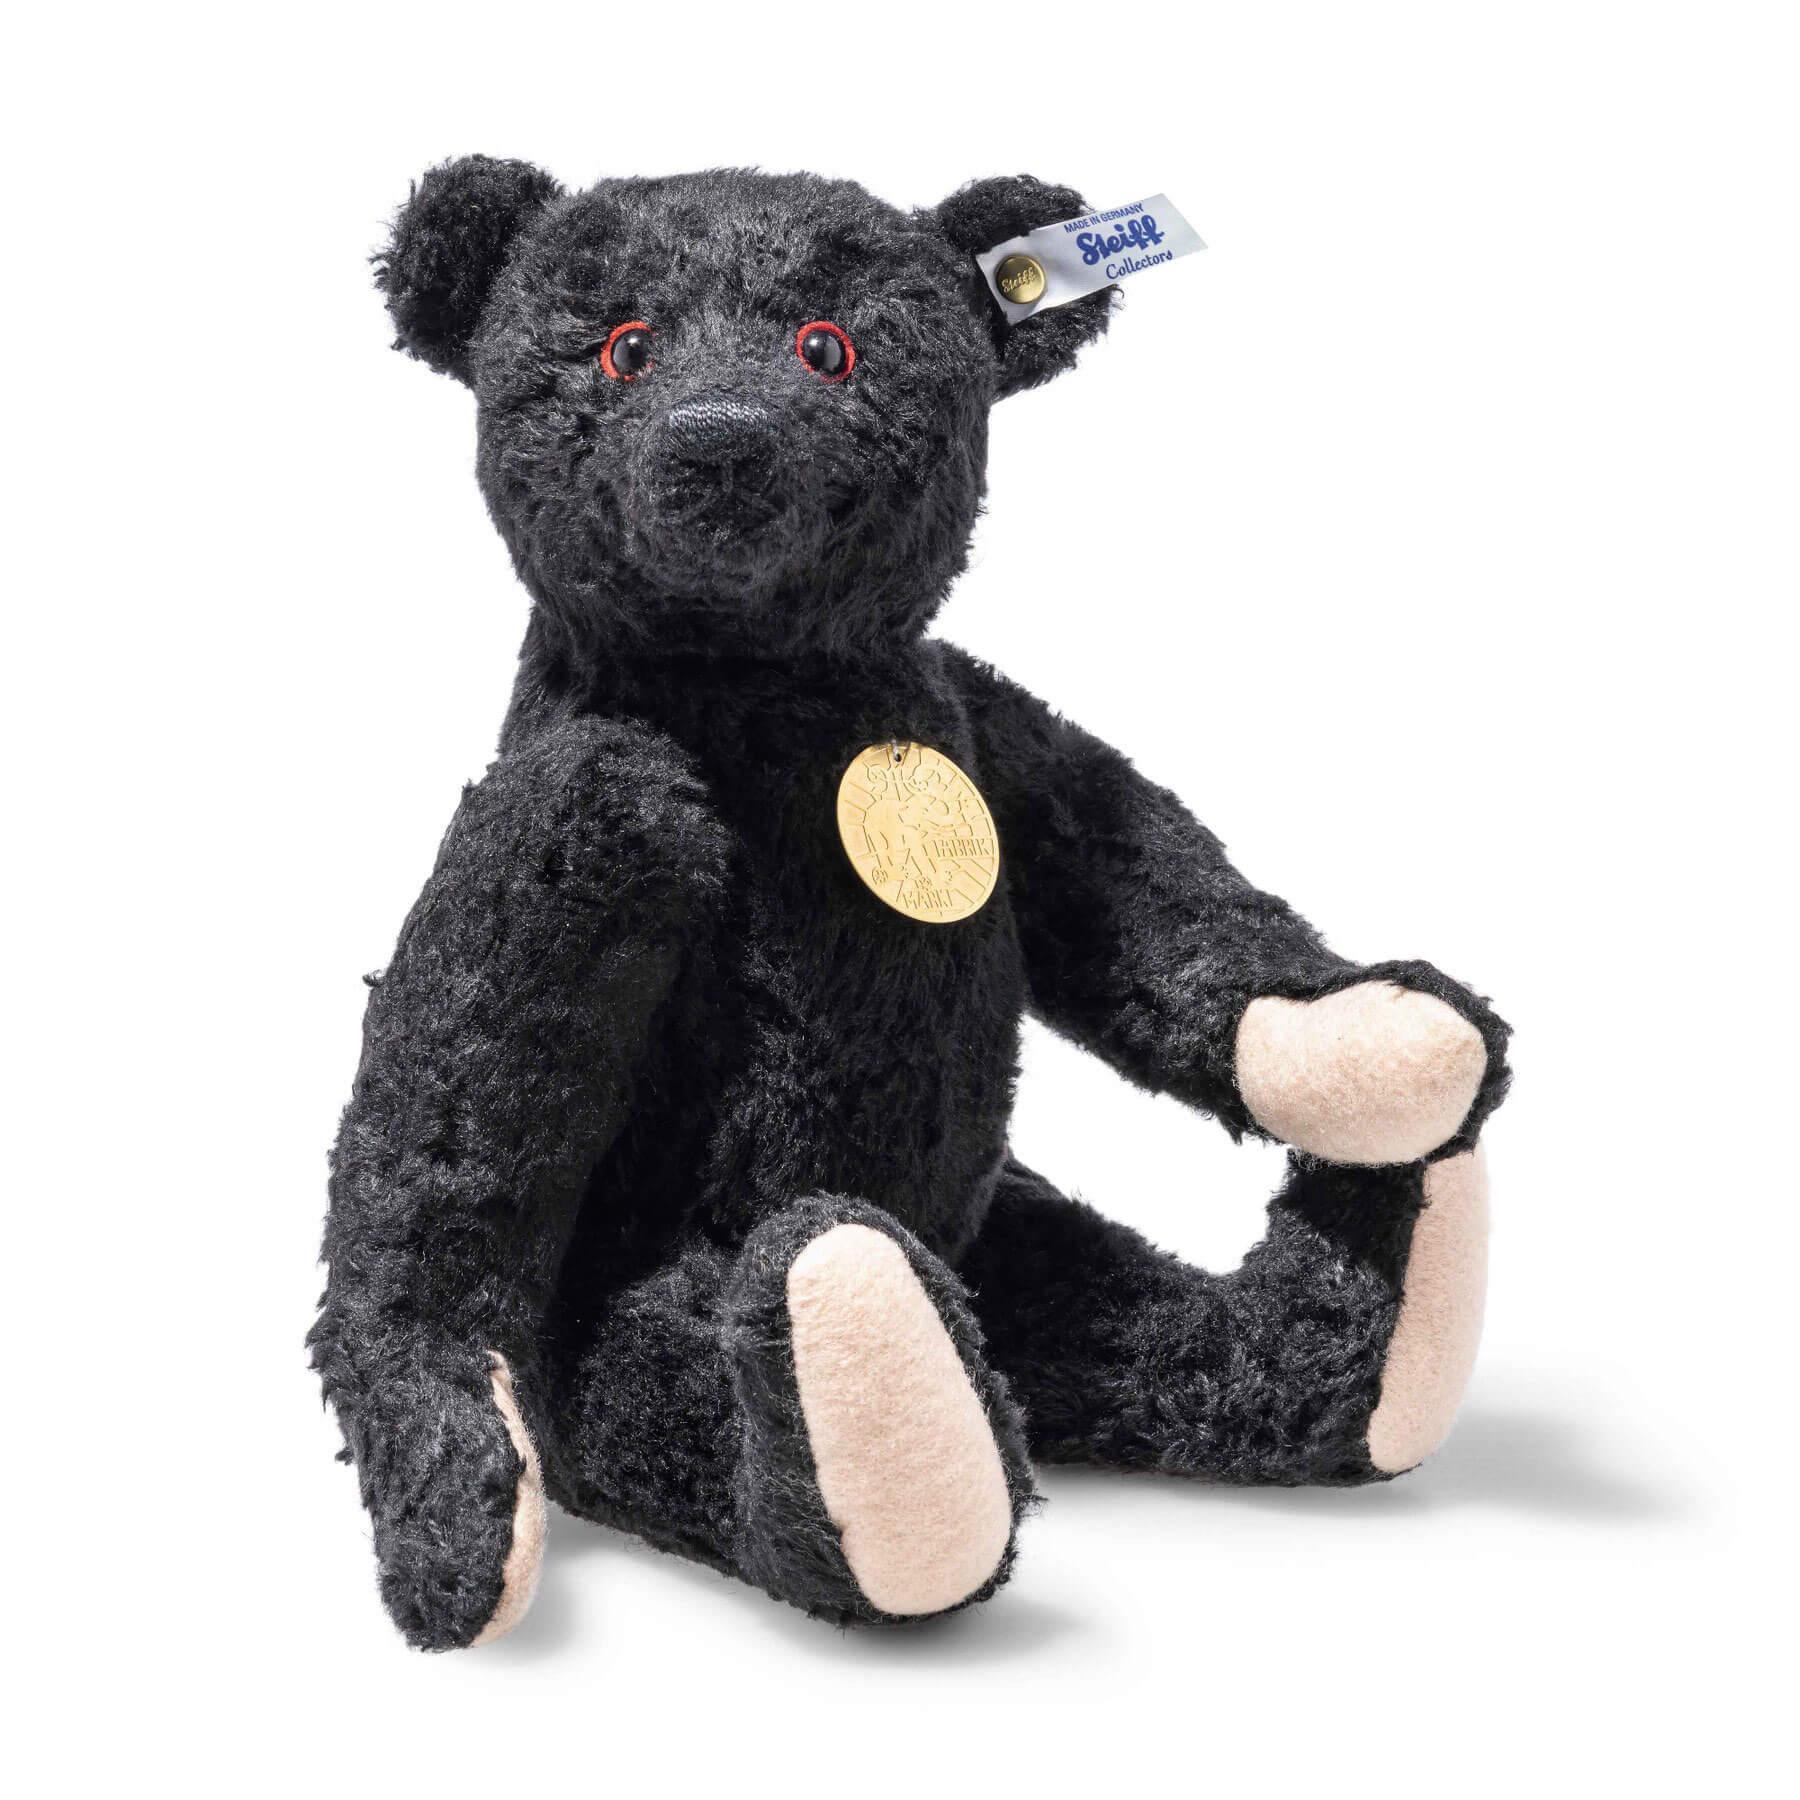 Black Teddy Bear 1912 "Teddies for Tomorrow" Steiff Teddy Bear - Black, 33cm